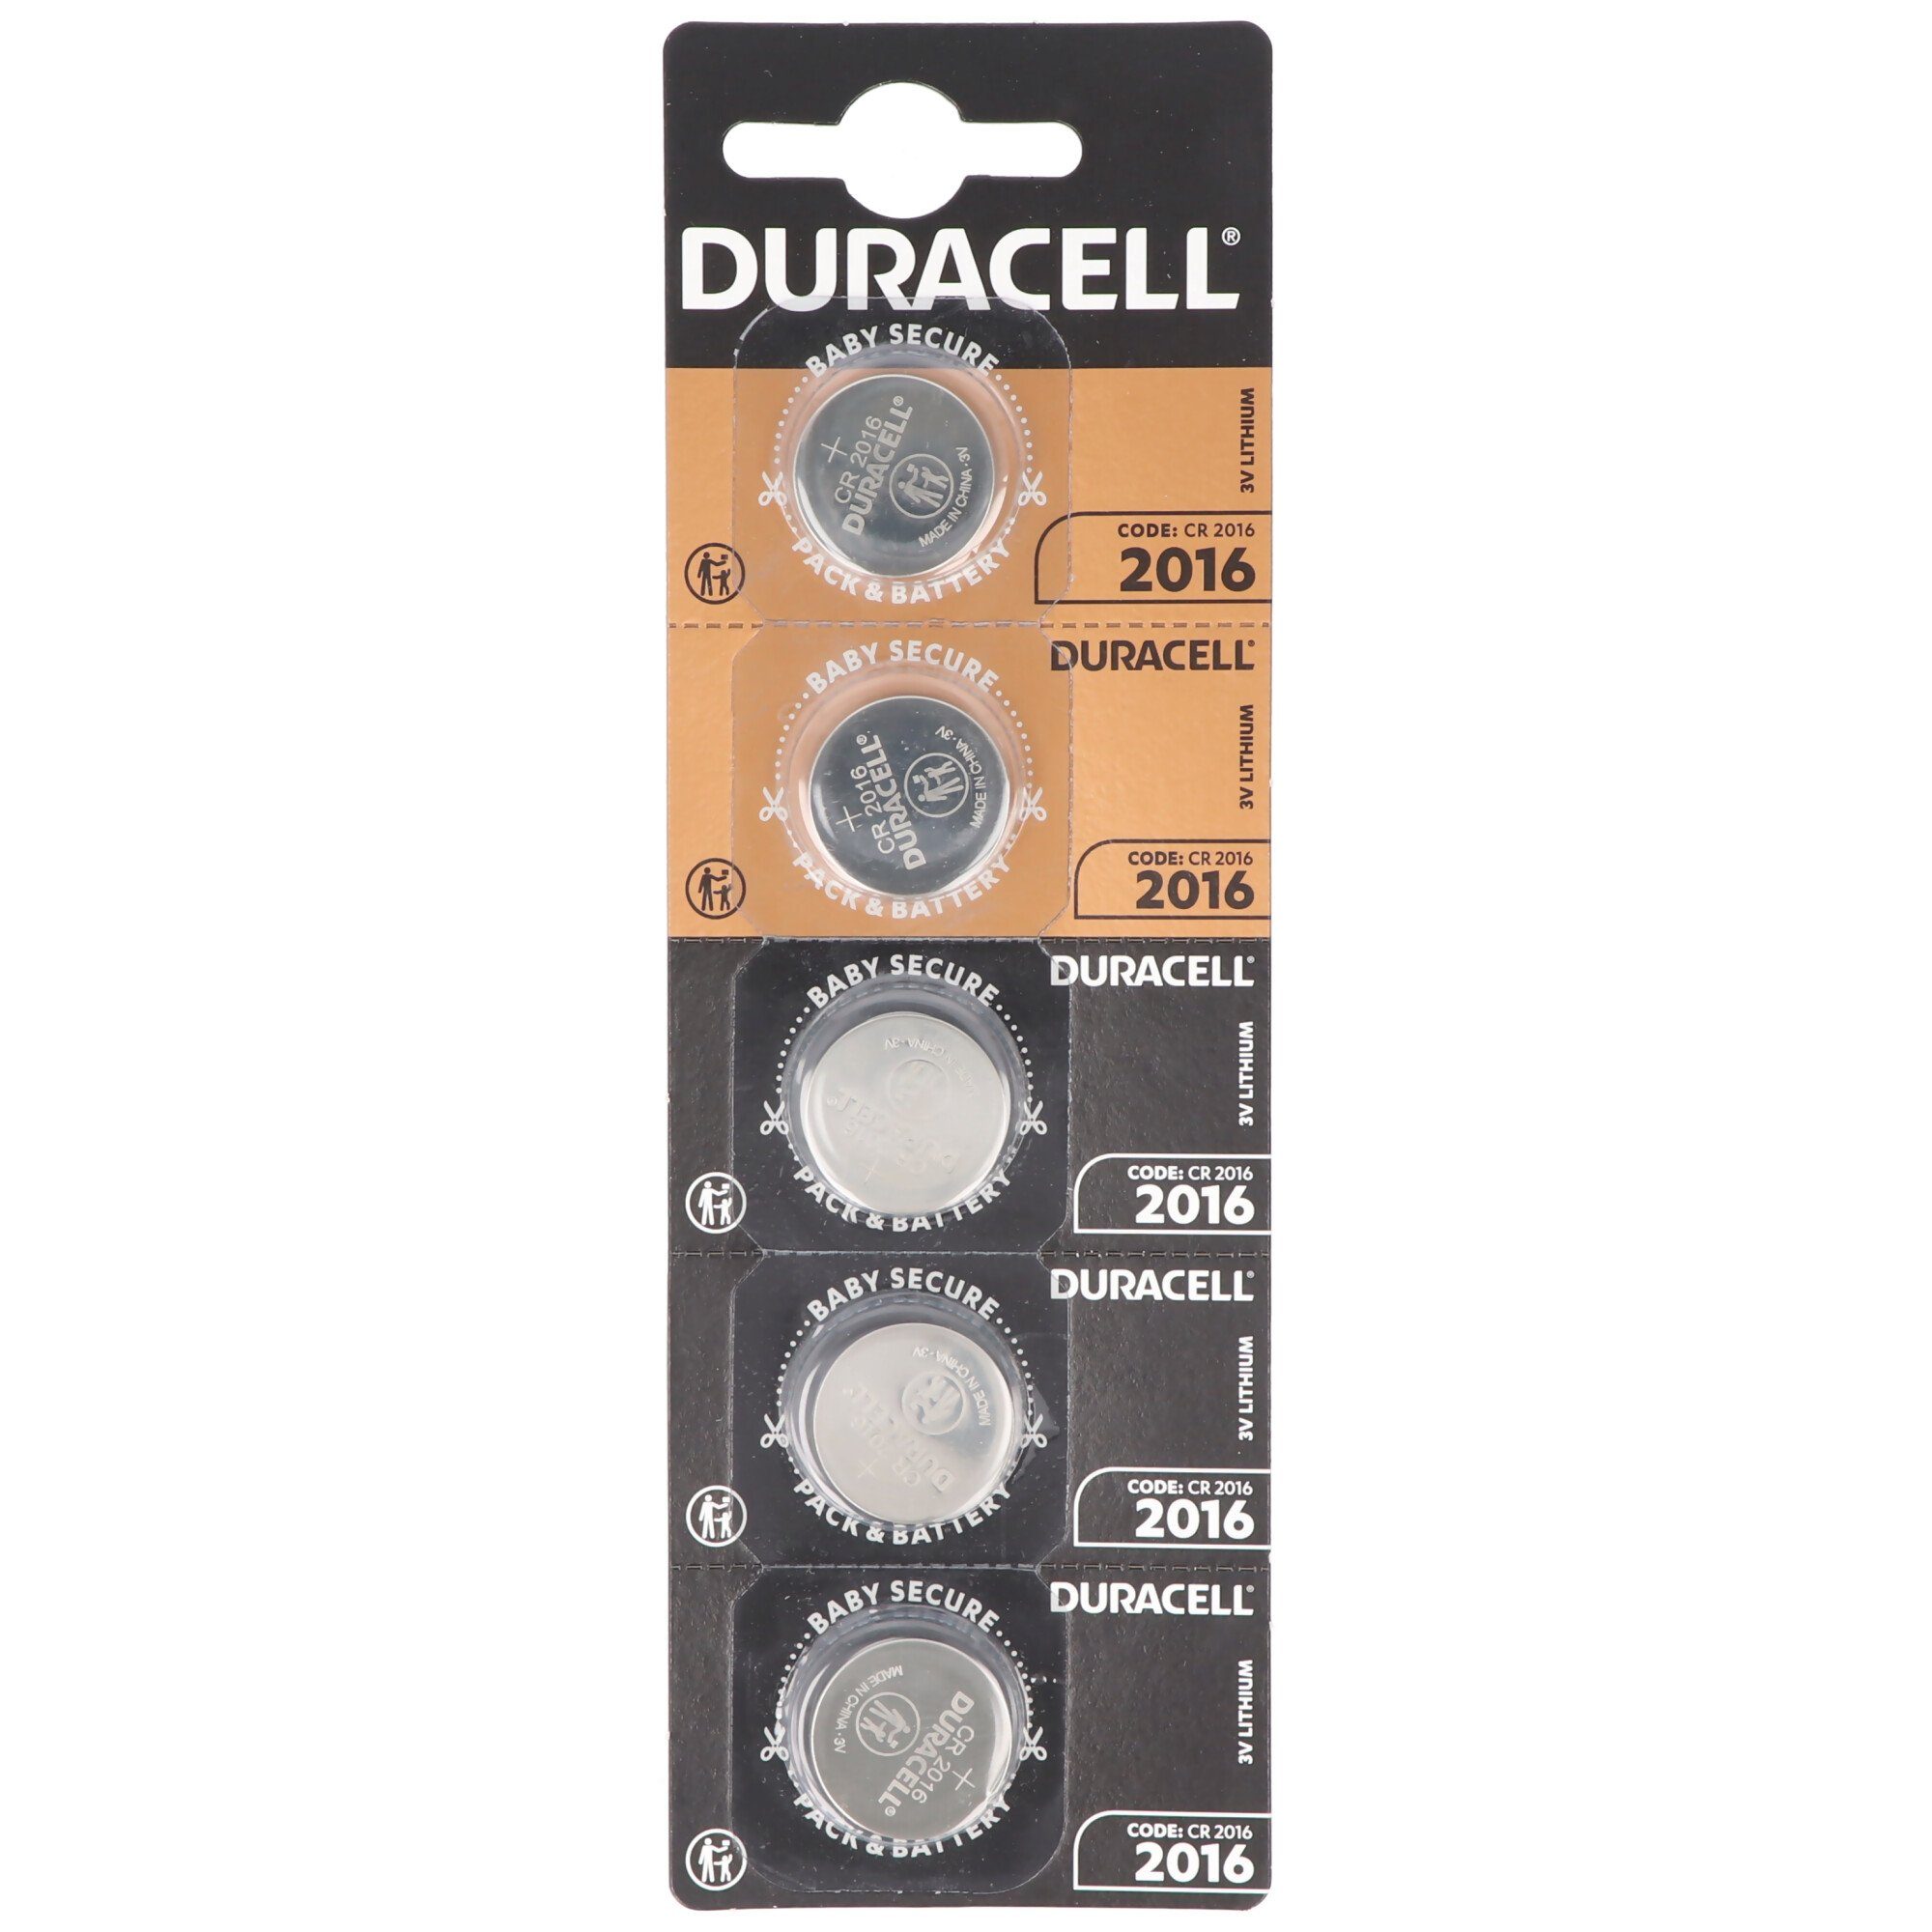 Batterie Batterie Duracell CR2016 Duracell 5x Lithium